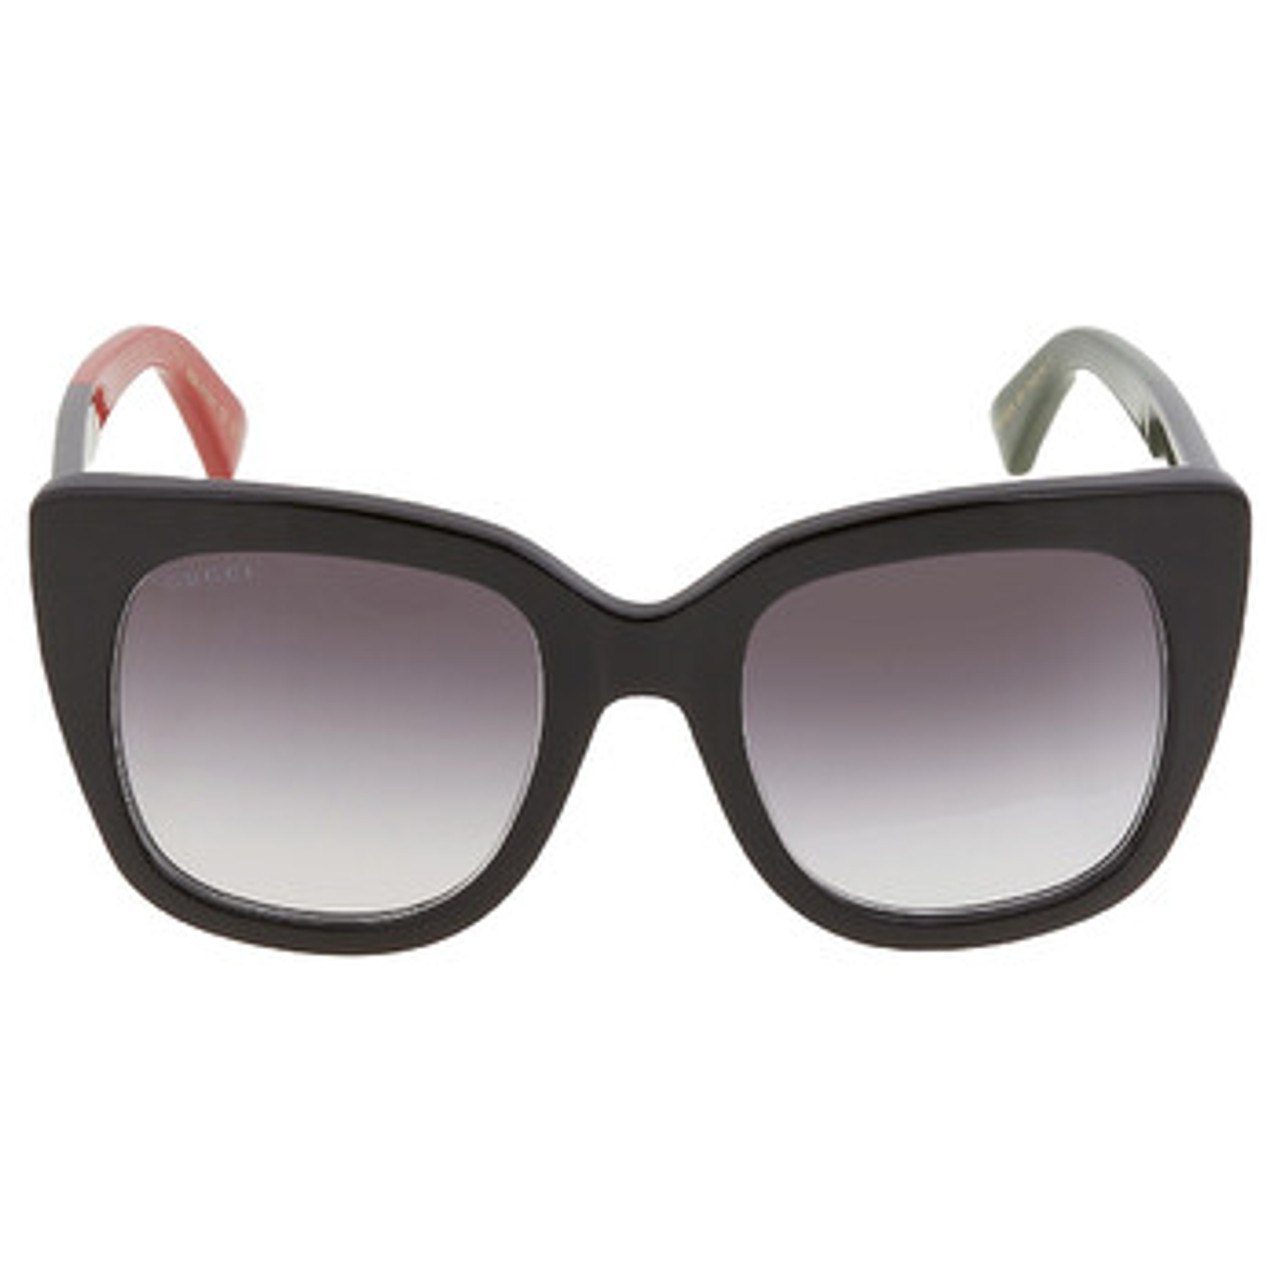 Gucci Sunglasses Women 632677J07411012 Acetate Black 451,5€